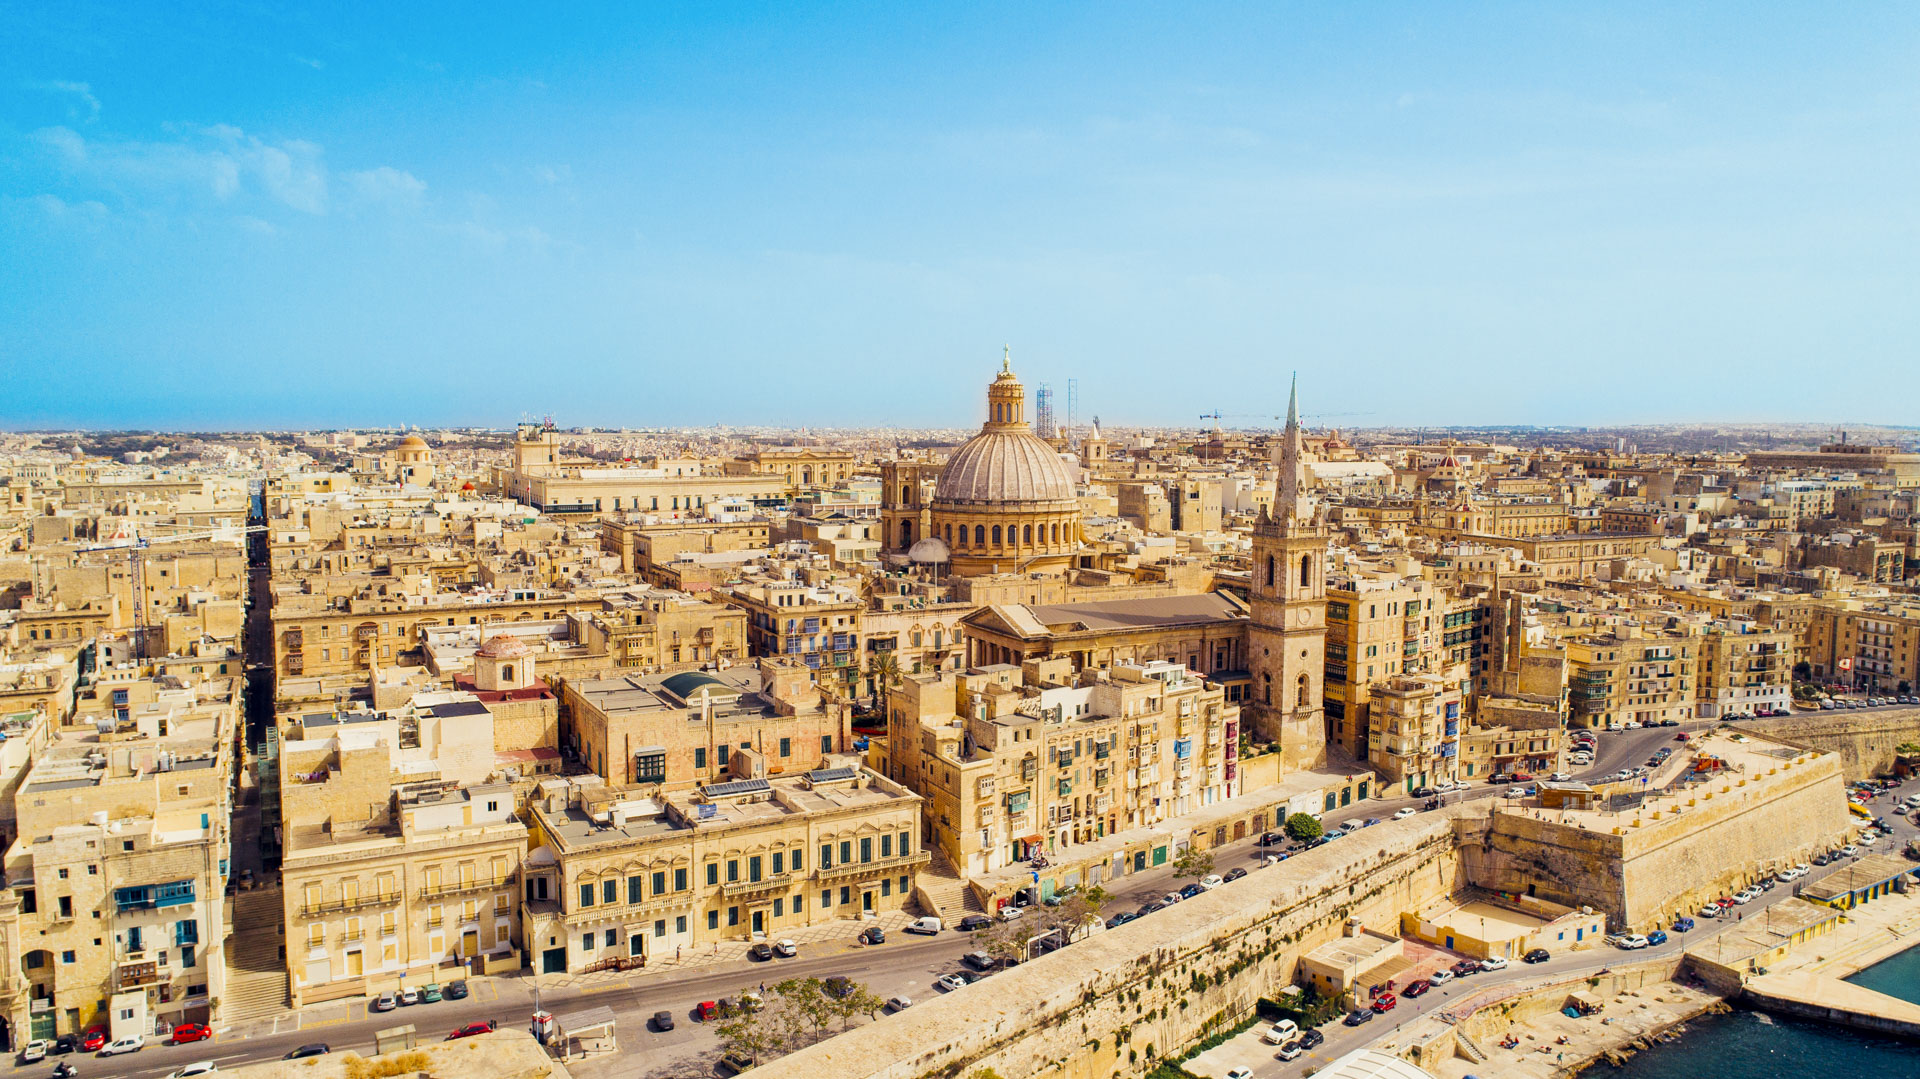 Hoofdstad Valletta van Malta is een van de bezienswaardigheden die je zeker niet mag missen!